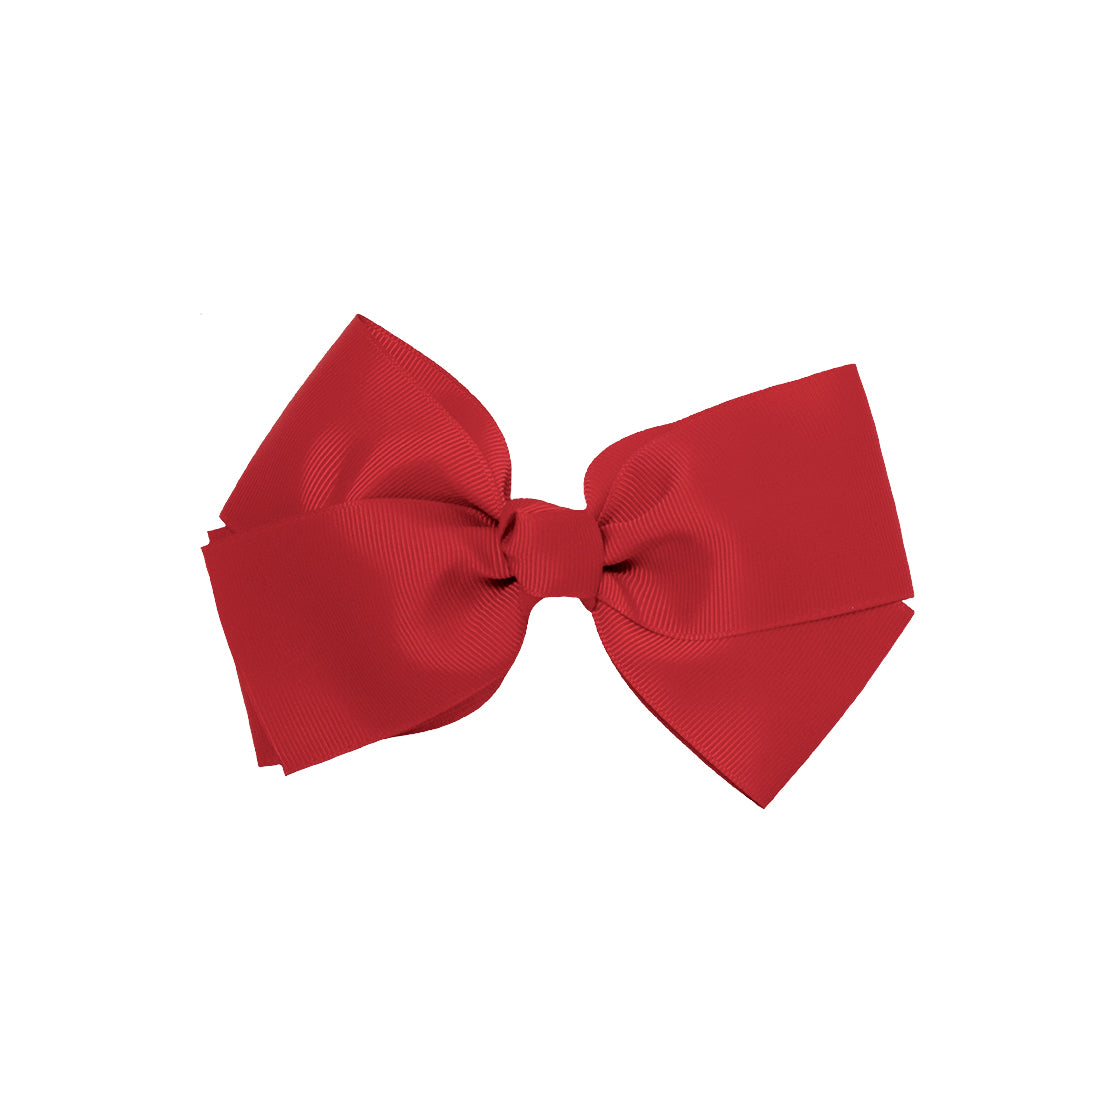 Mia® Spirit Grosgrain Ribbon Bow Barrette - large size - maroon red color - clasp barrette - designed by #MiaKaminski of Mia Beauty